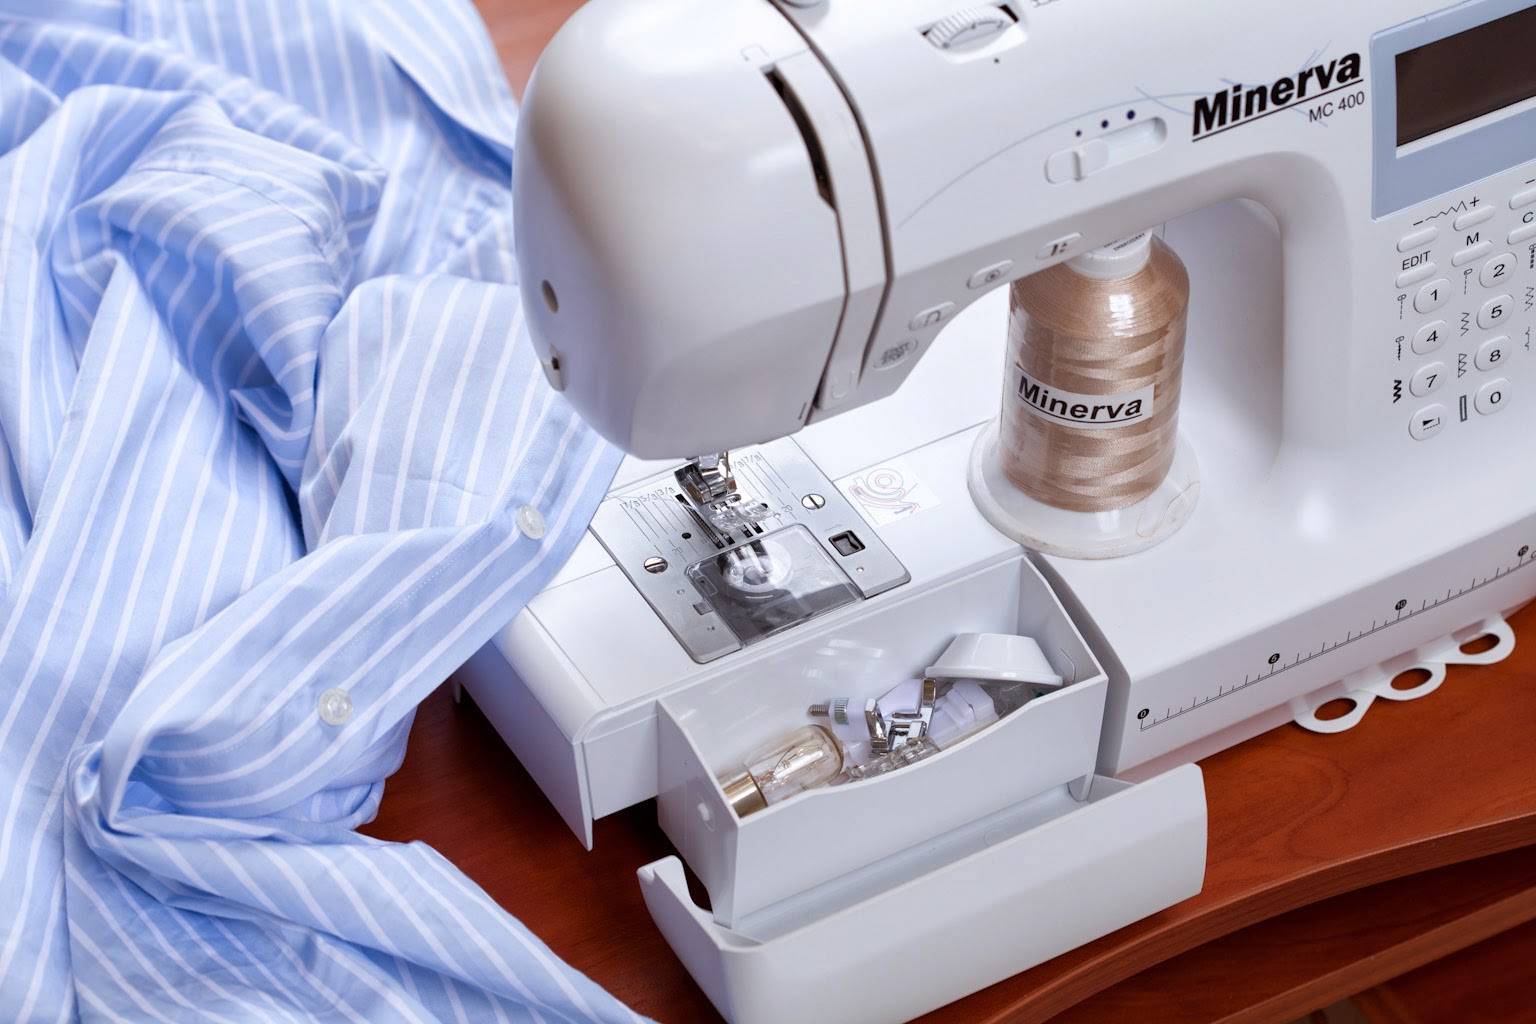 Домашние швейные машинки рейтинг. Минерва швейная машинка производитель. Minerva Decor Expert челнок. Компьютеризированная швейная машина. Швейные машинки много.